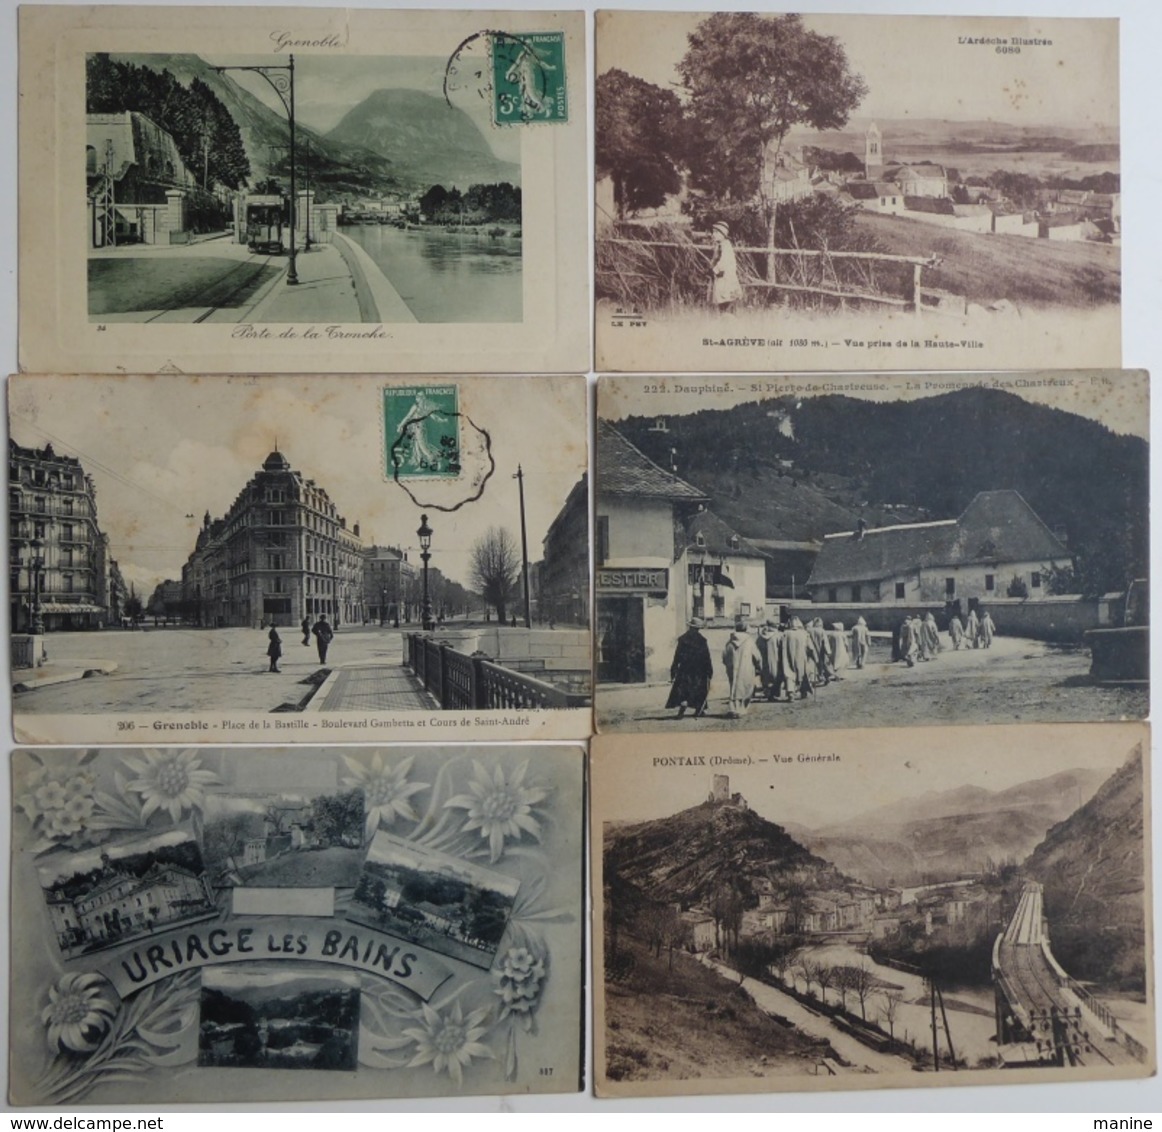 FRANCE; Lot de 350 Cartes postales anciennes à trier de l'ancienne région Rhône-Alpes